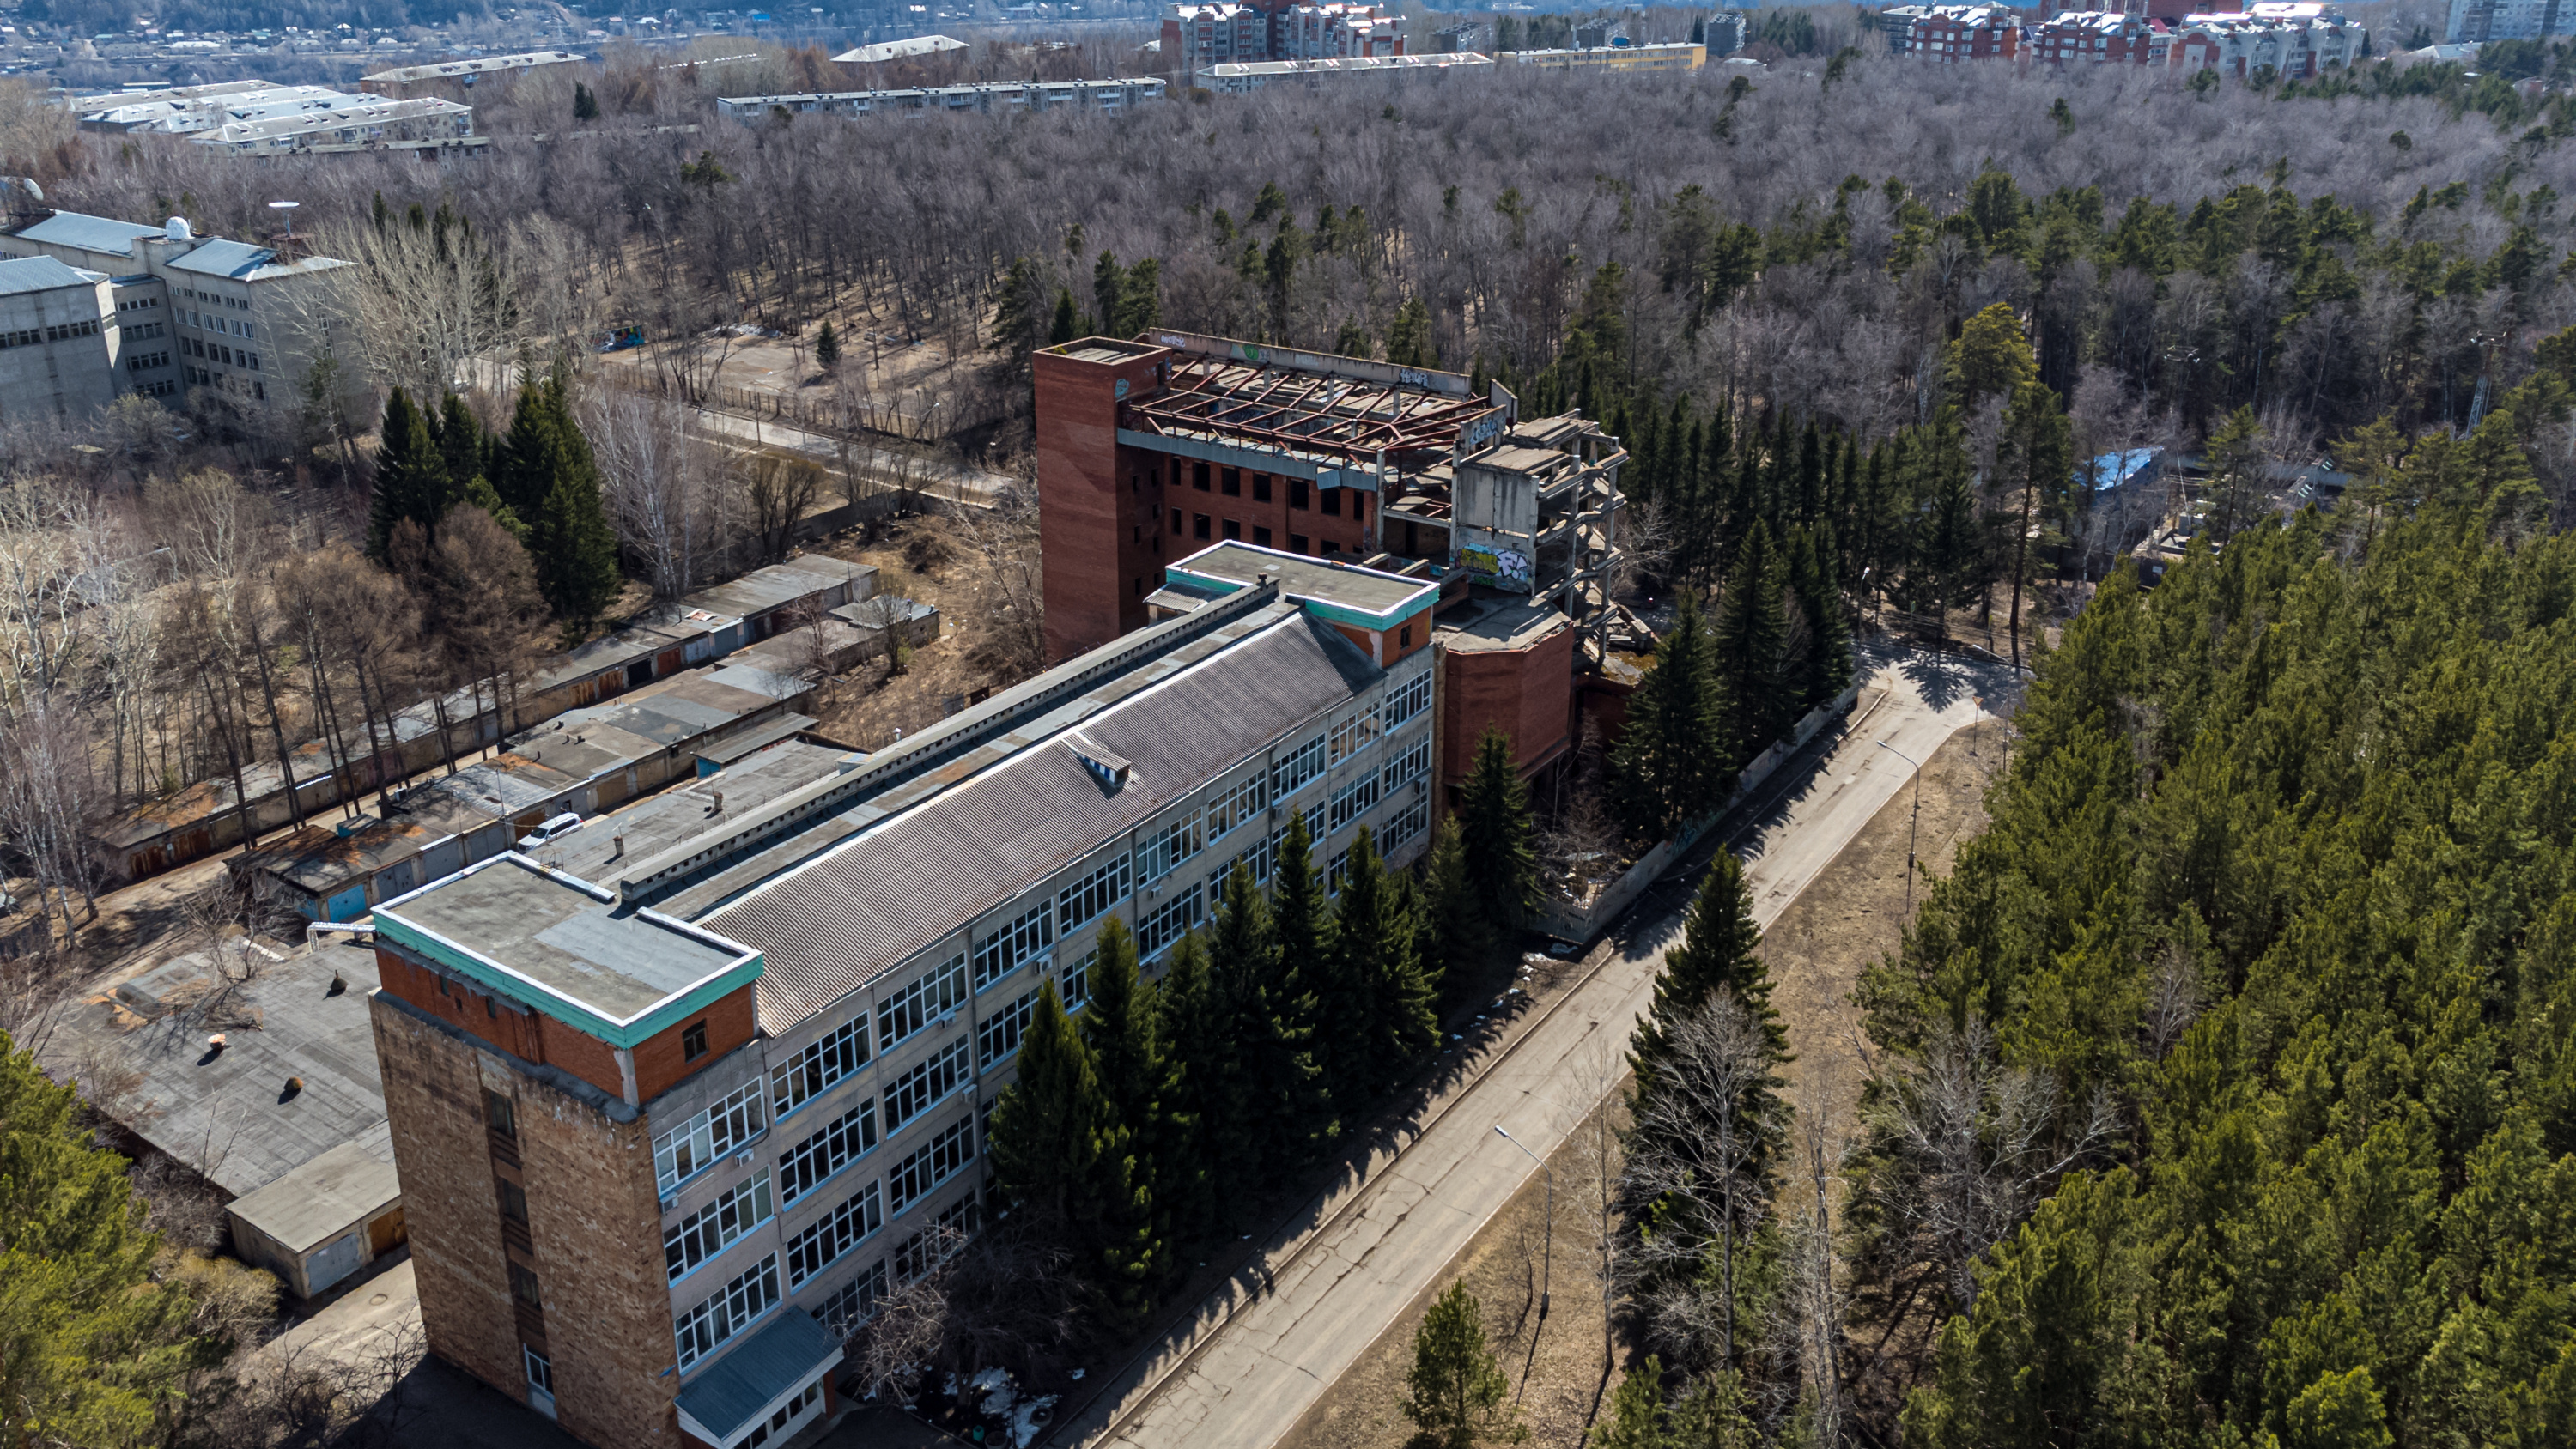 Застройщики Николаевки купили легендарный недострой Института биофизики в Академгородке. Цену подняли в пять раз